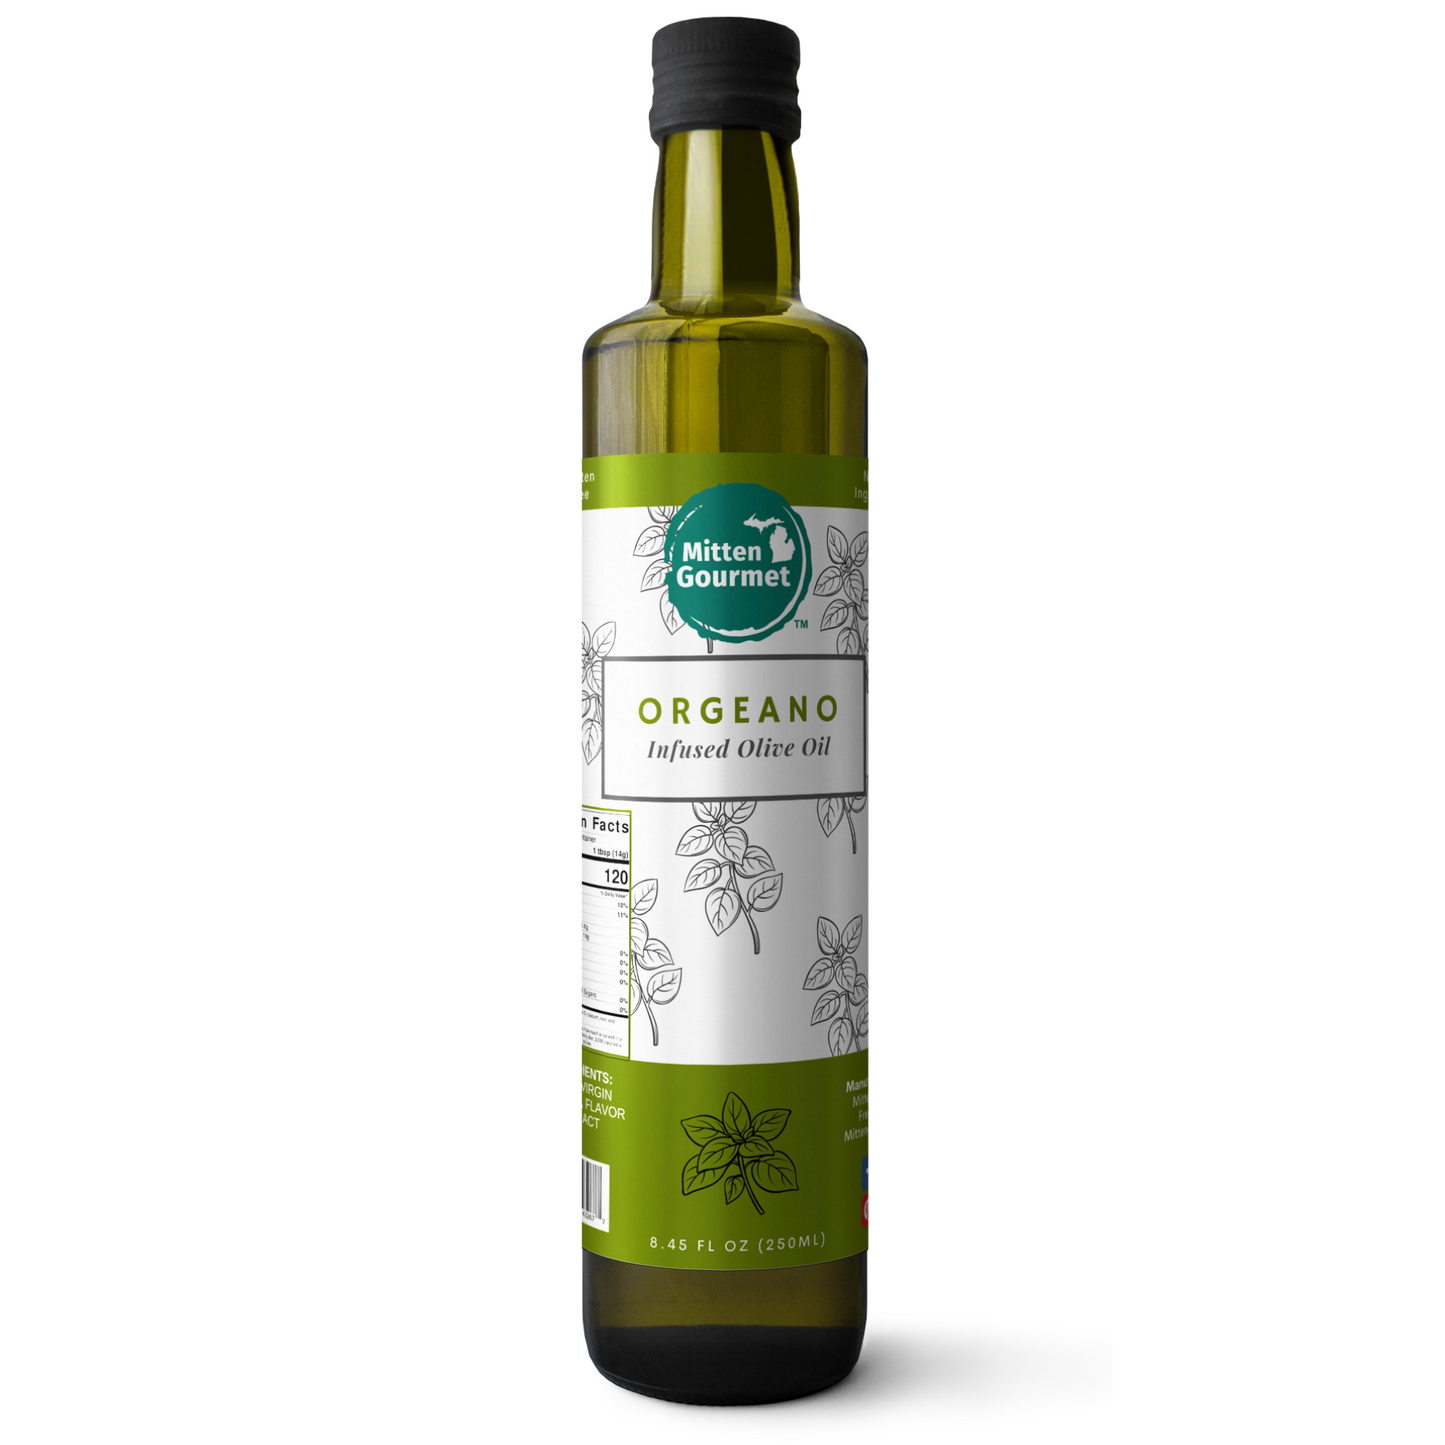 Oregano Infused Olive Oil - Case of 6 ($11.99ea)